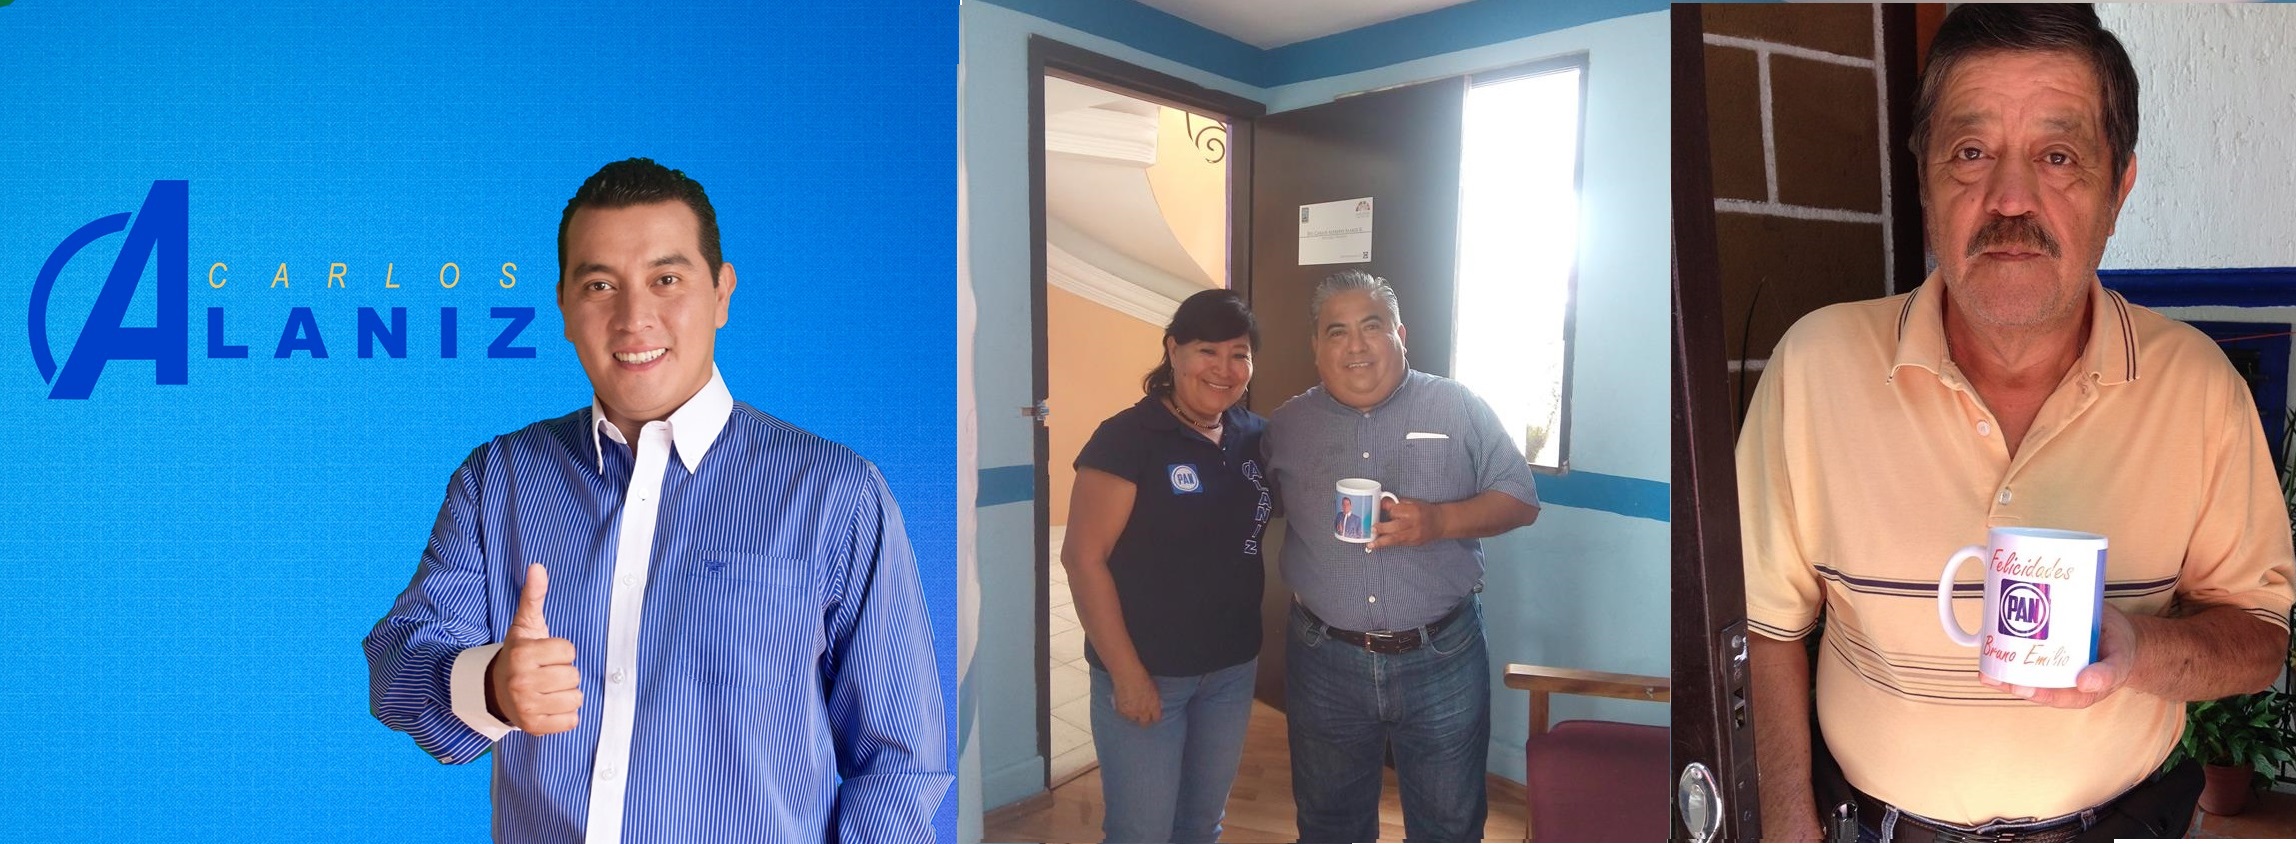 Carlos Alaniz regala Tazitas de Cafe en busca de Votos Futuros